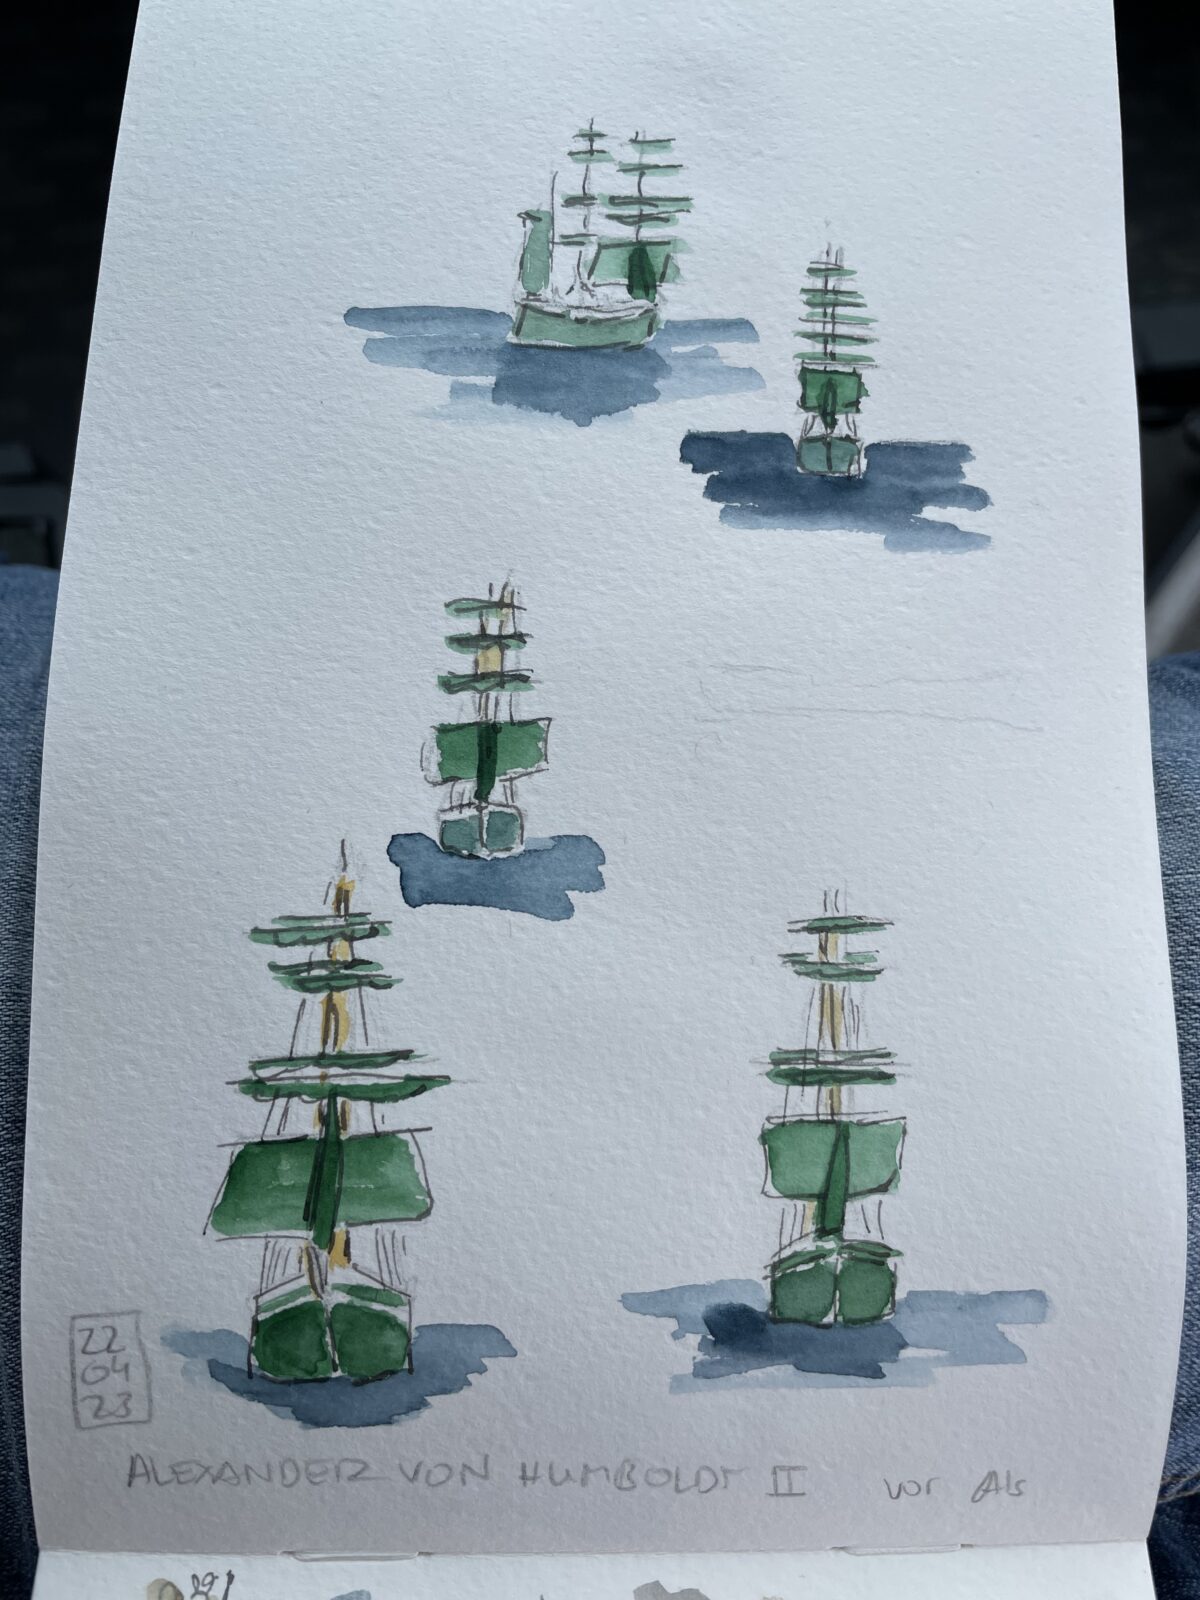 Blatt aus dem Skizzenbuch im Hochformat: mehrere Skizzen eines 3 Mast Rah Segelschiffs von vorne gesehen. Das untere Großsegel am vorderen Masst und das Vorsegel sind gehisst. Die Segel und der Rumpf des Schiffes sind grün.